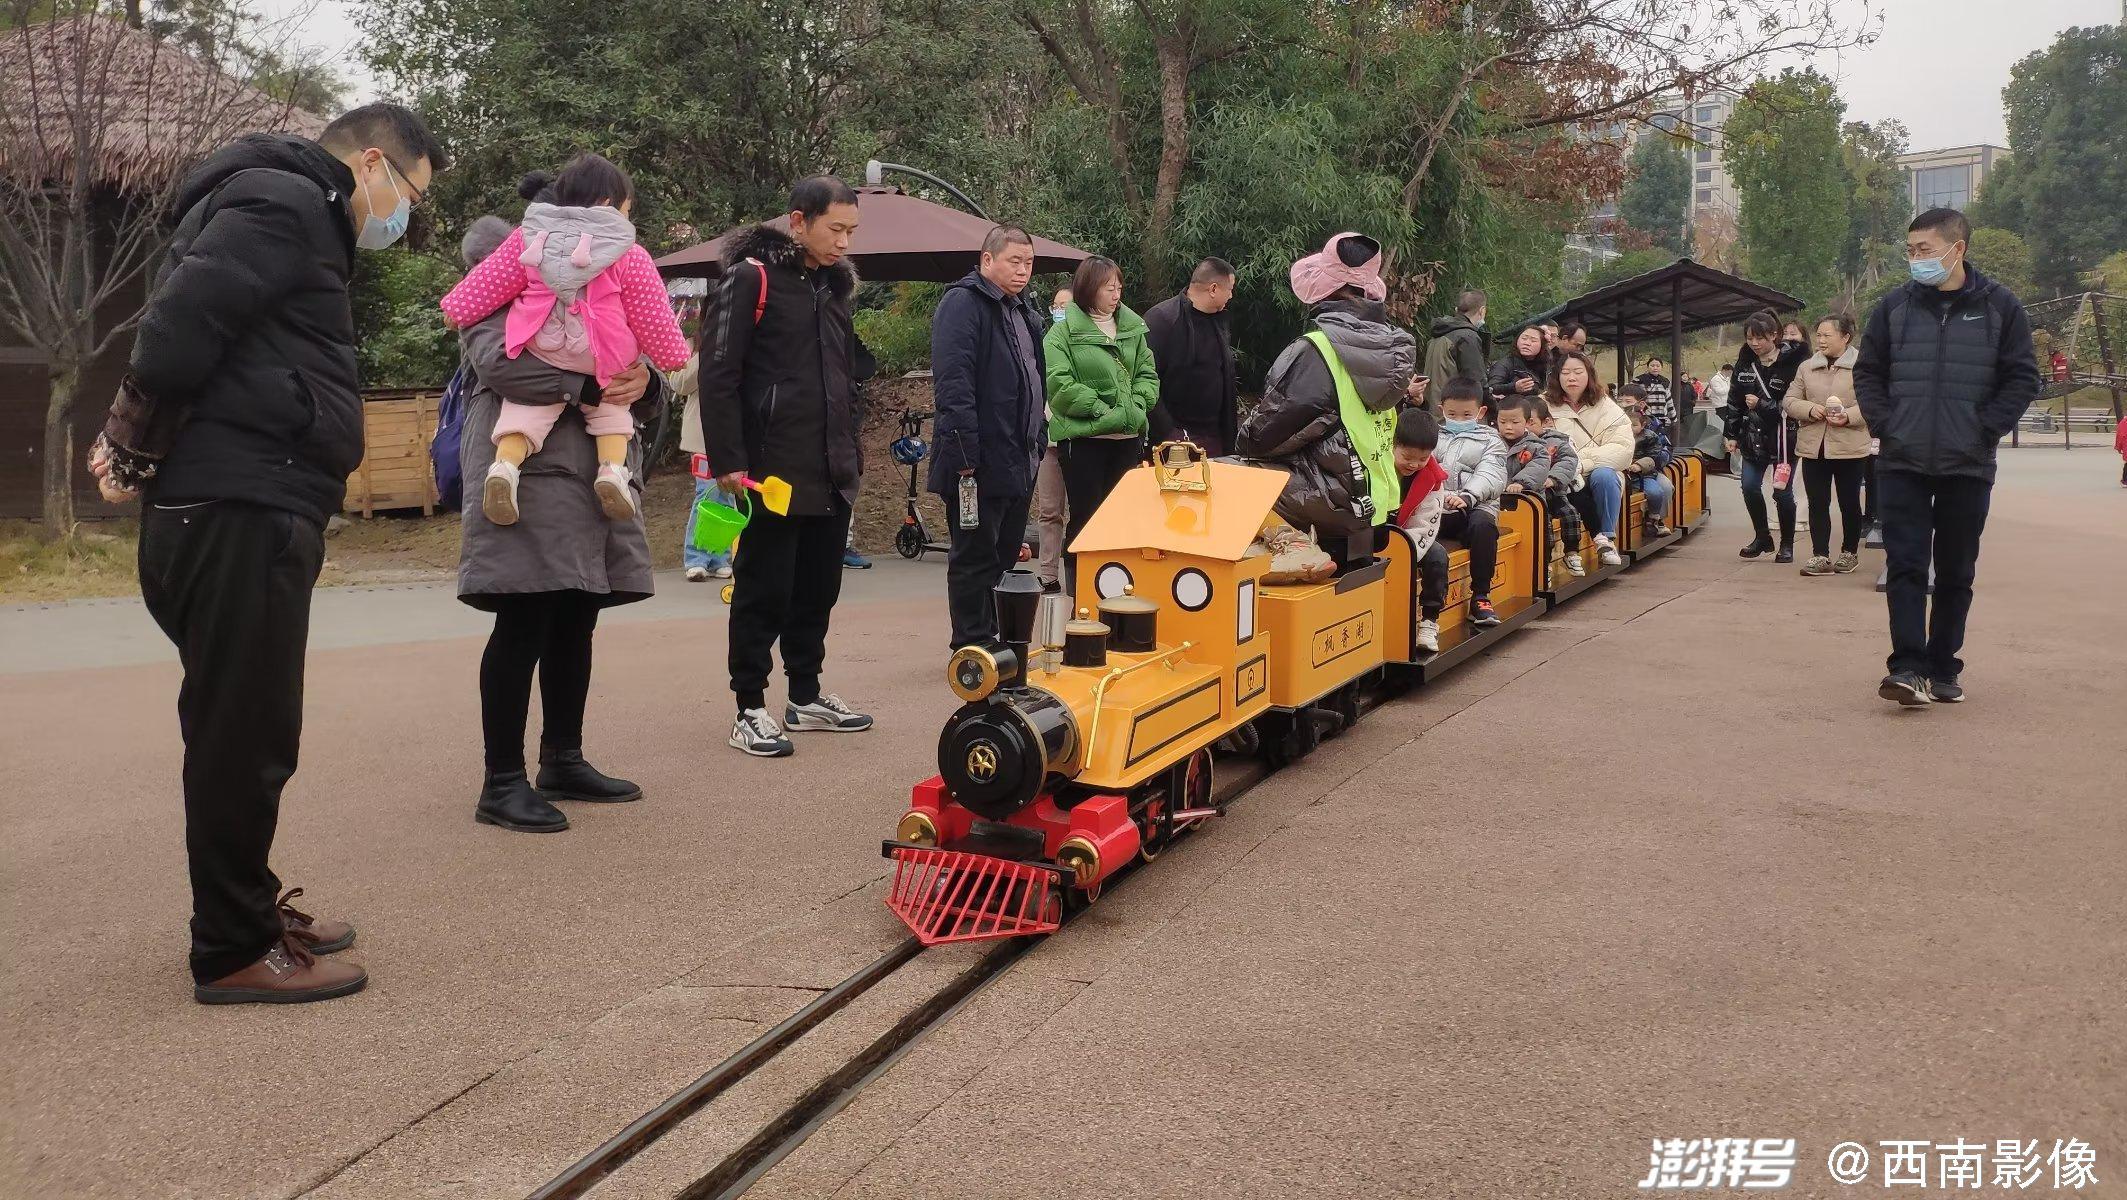 重庆一公园现迷你版“观光小火车” 吸引众多“小乘客”乘坐